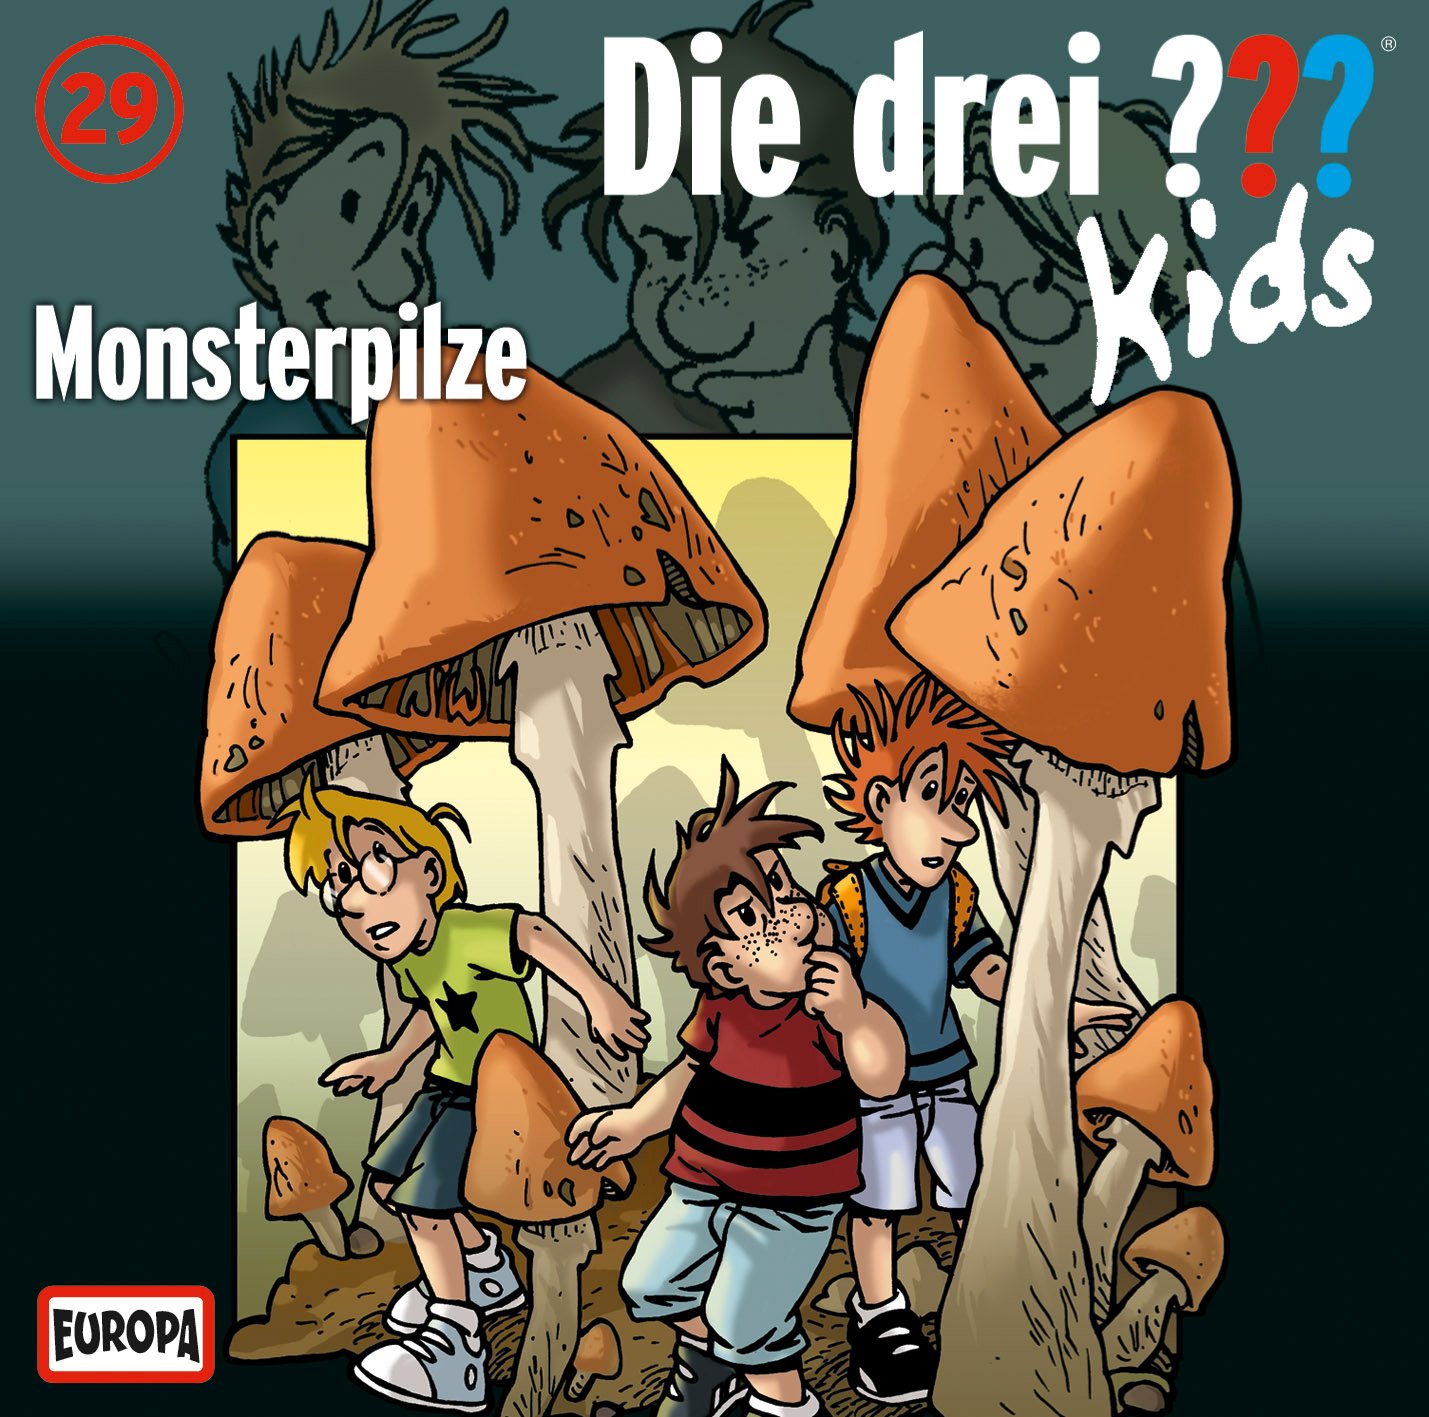 Die Drei ??? (Fragezeichen) Kids, Hörspiel-Folge 29: Monsterpilze